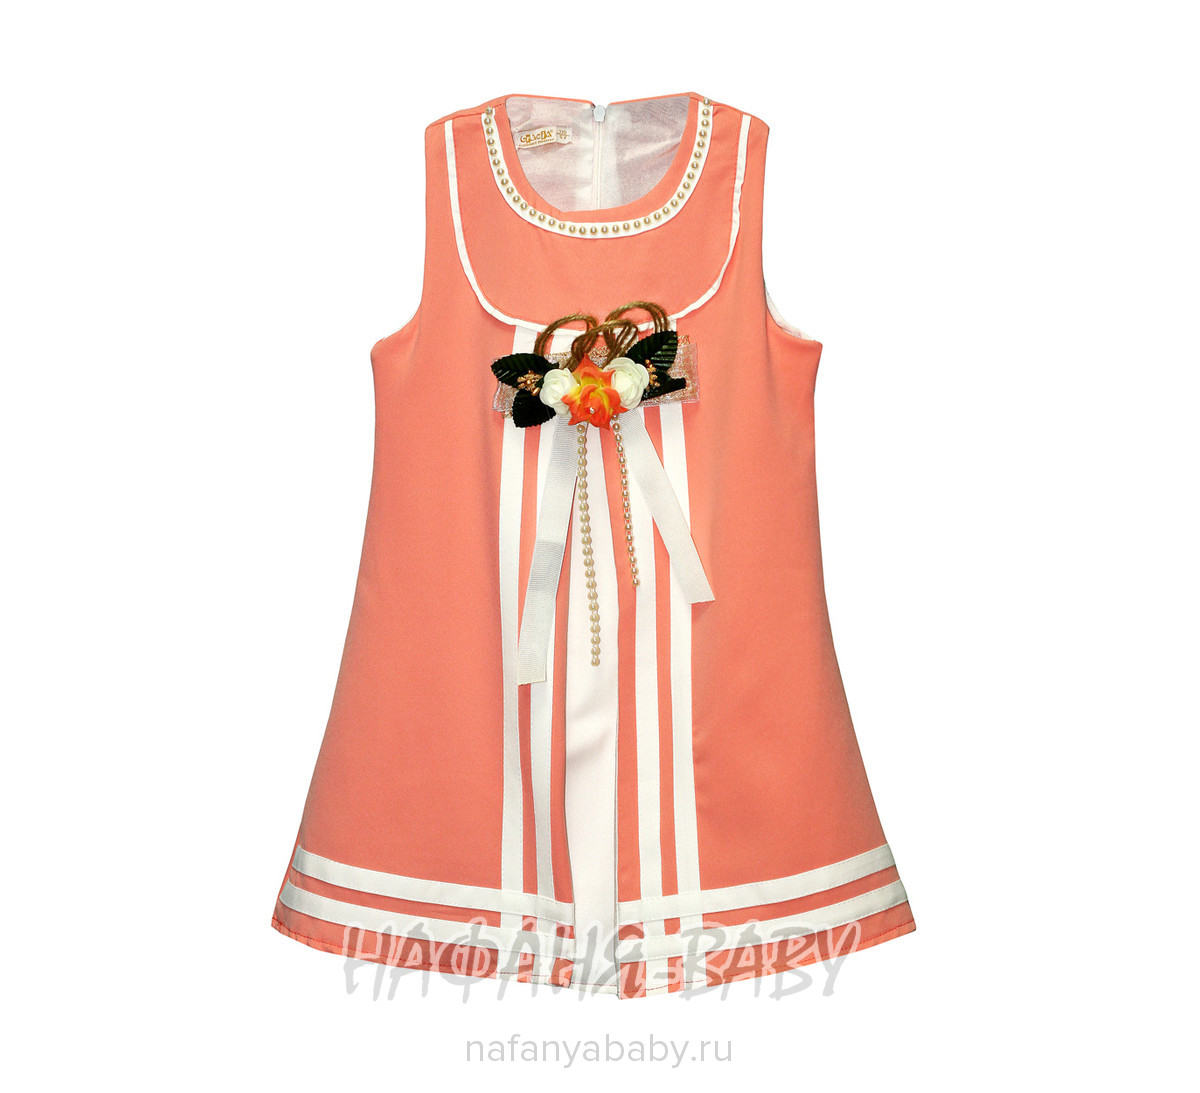 Детское нарядное платье CREMIX, купить в интернет магазине Нафаня. арт: 0790.